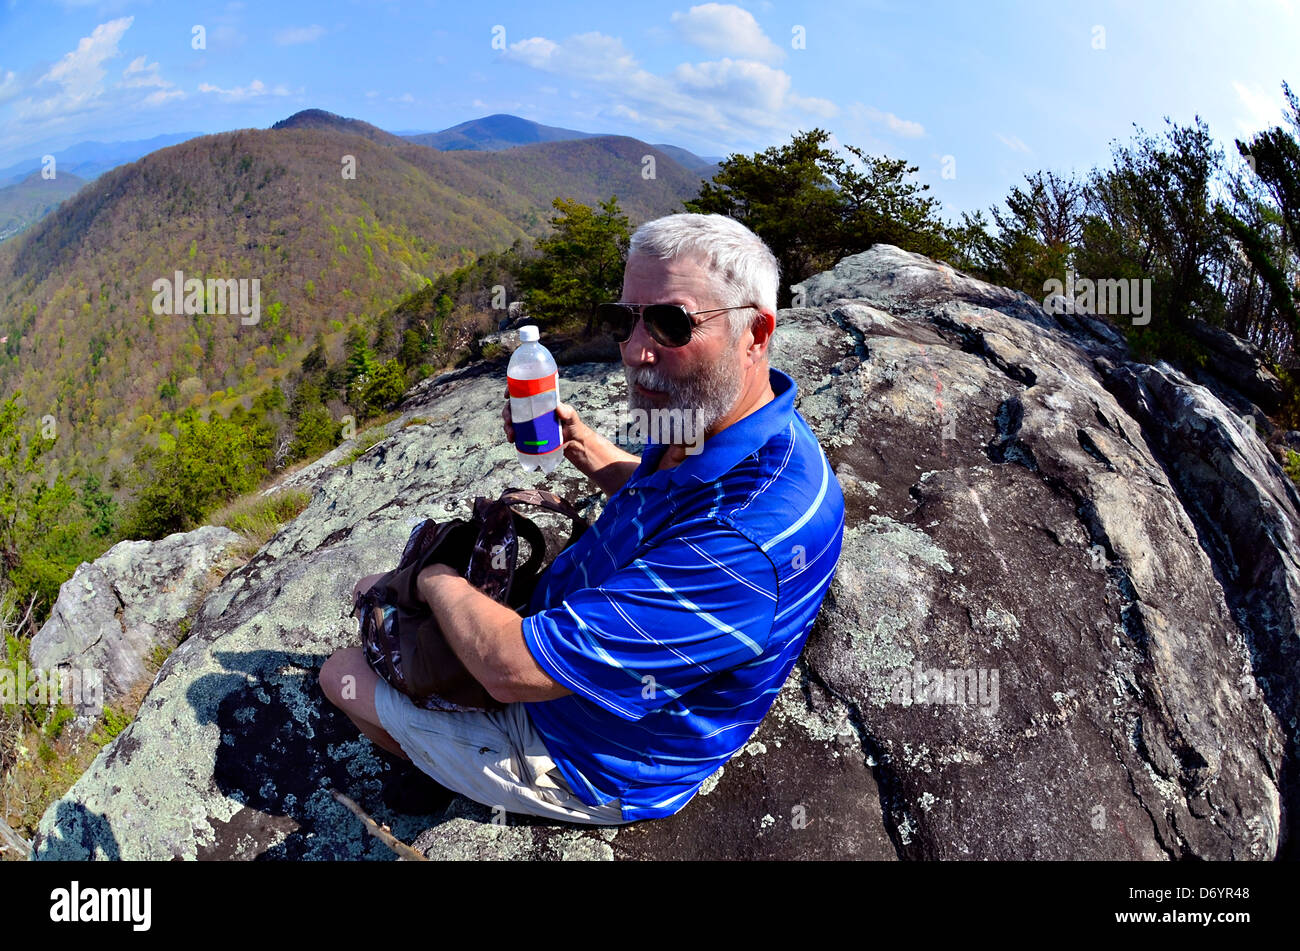 Anciano sobre una roca dan a parar para comer y beber en las Smoky Mountains. Tomada con una lente ojo de pez. Foto de stock